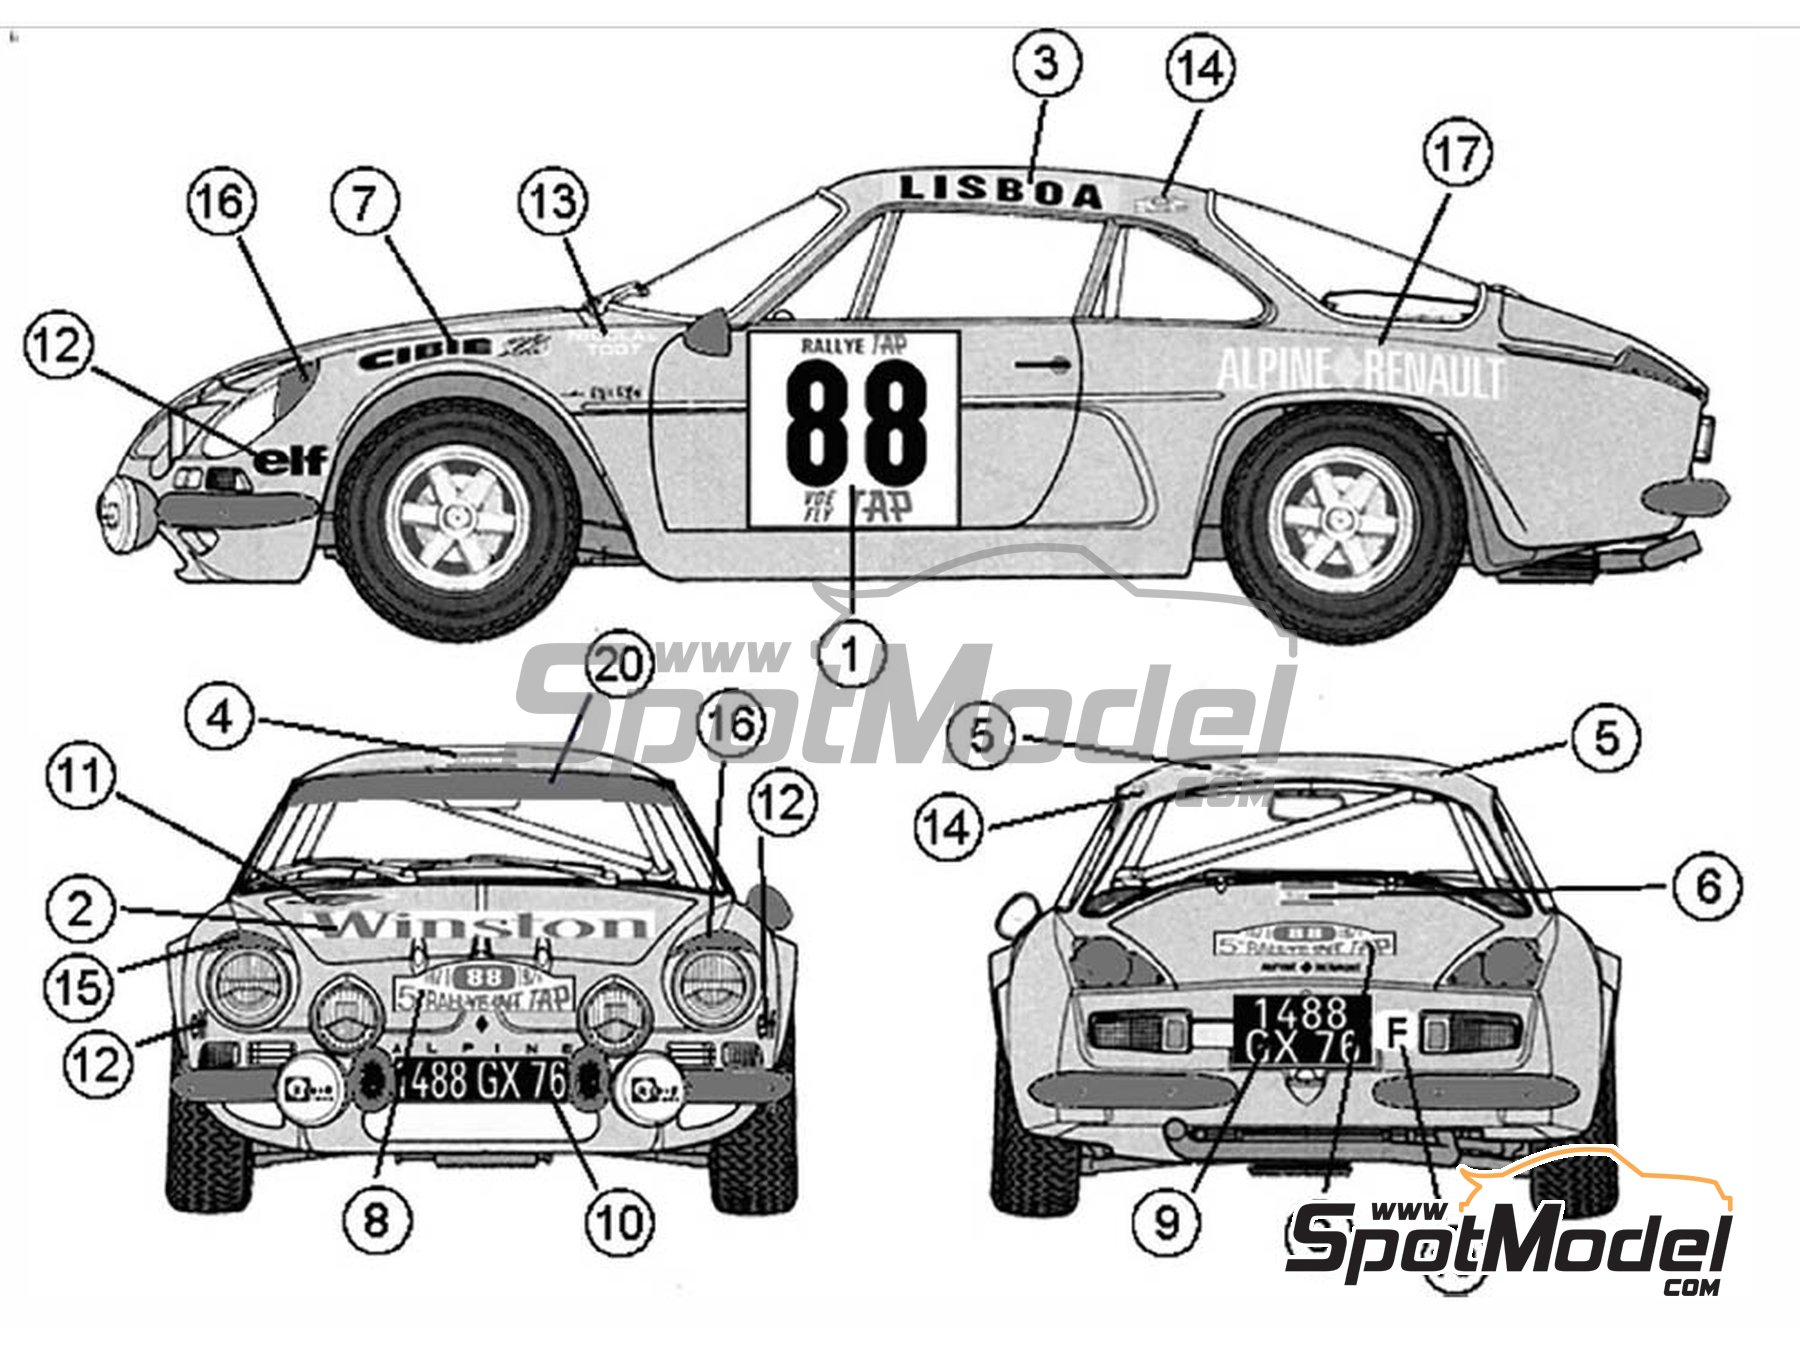 DECALS 1/24 REF 595 ALPINE RENAULT A110 LARROUSSE TOUR DE CORSE 1974 RALLYE WRC 